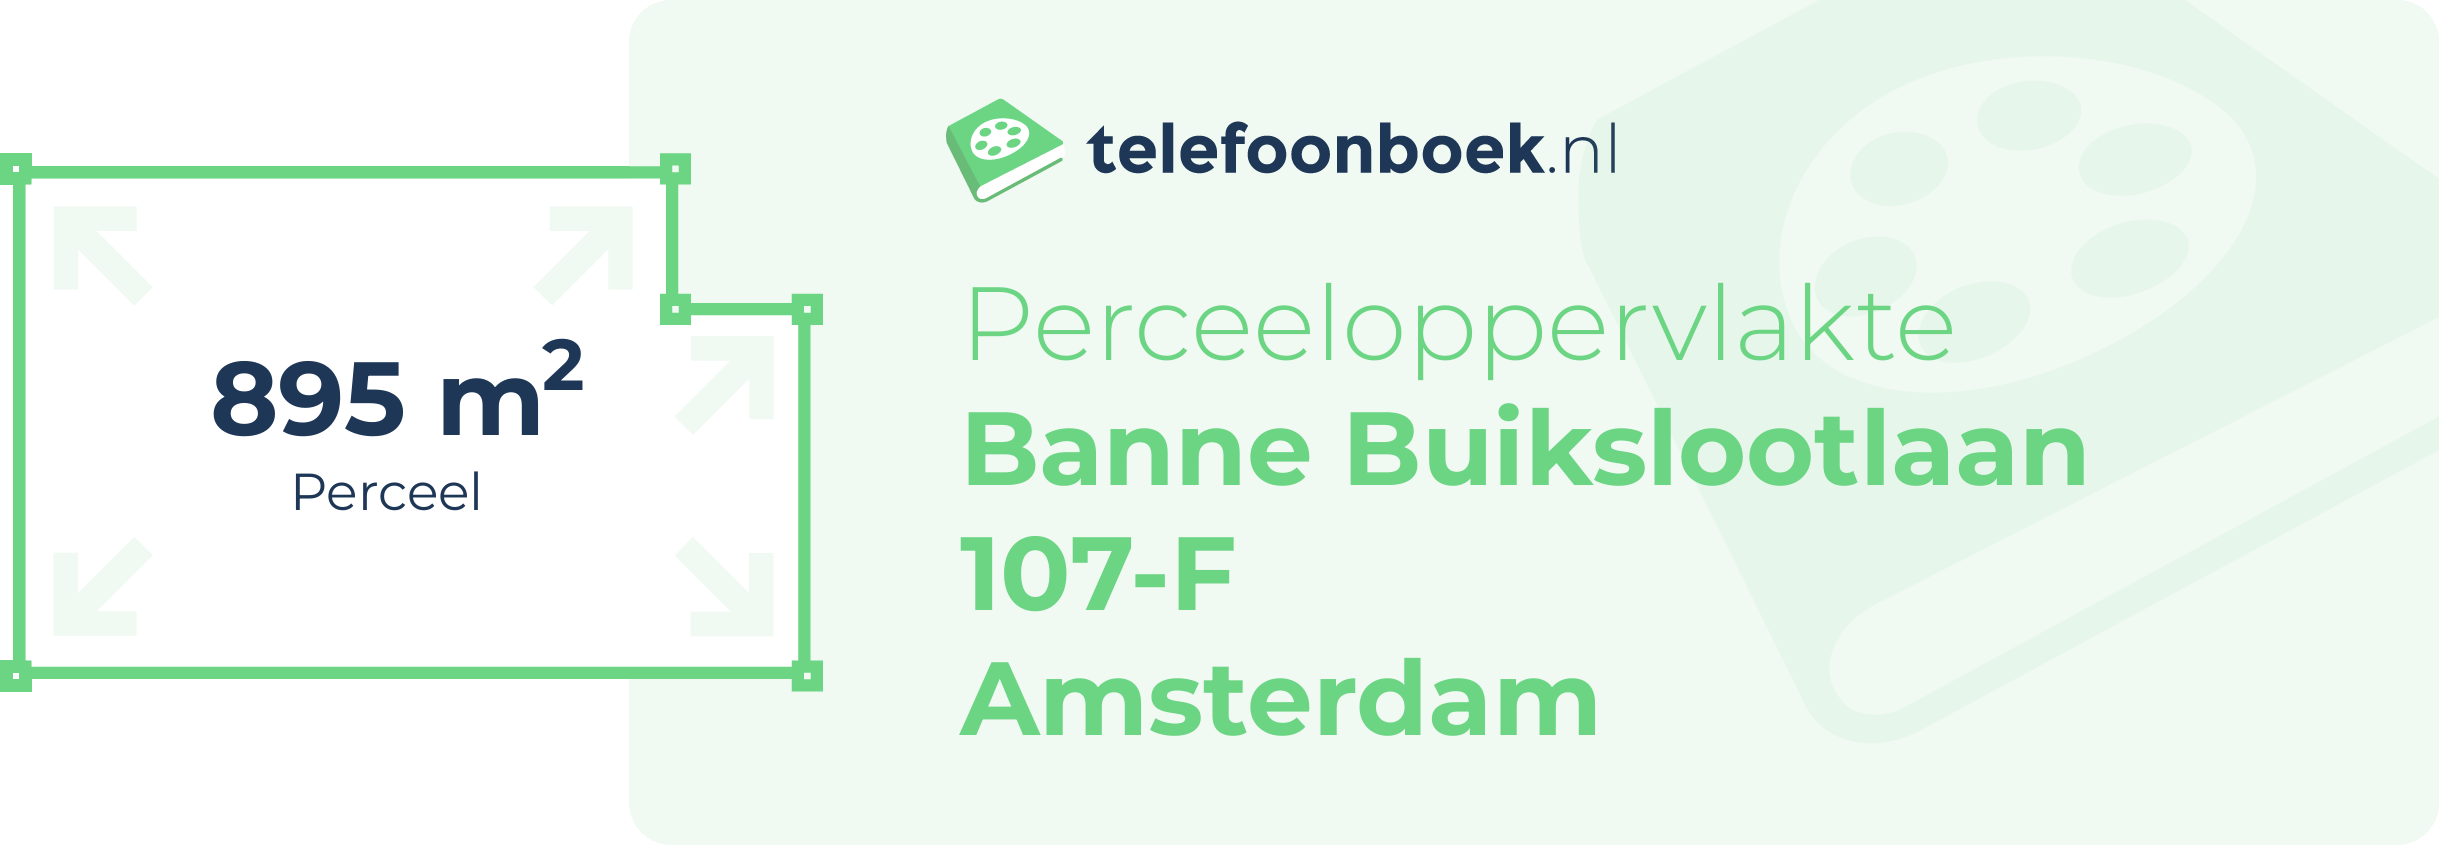 Perceeloppervlakte Banne Buikslootlaan 107-F Amsterdam